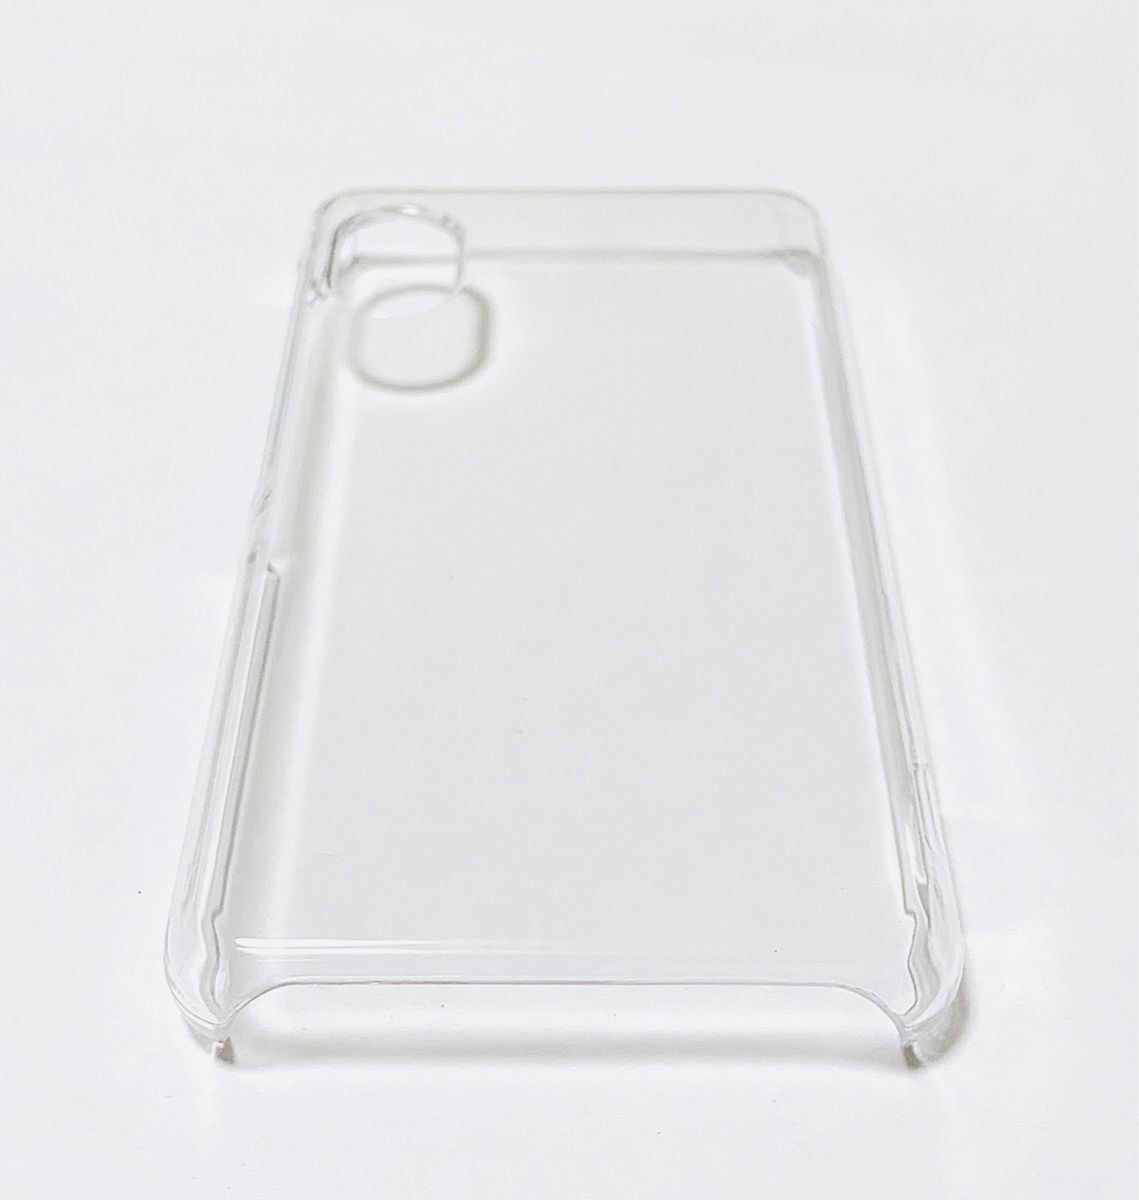 【セット】Rakuten Mini 液晶保護ガラスフィルムとクリアハードケース 新品 Rakutenミニ 楽天ミニ お得セット